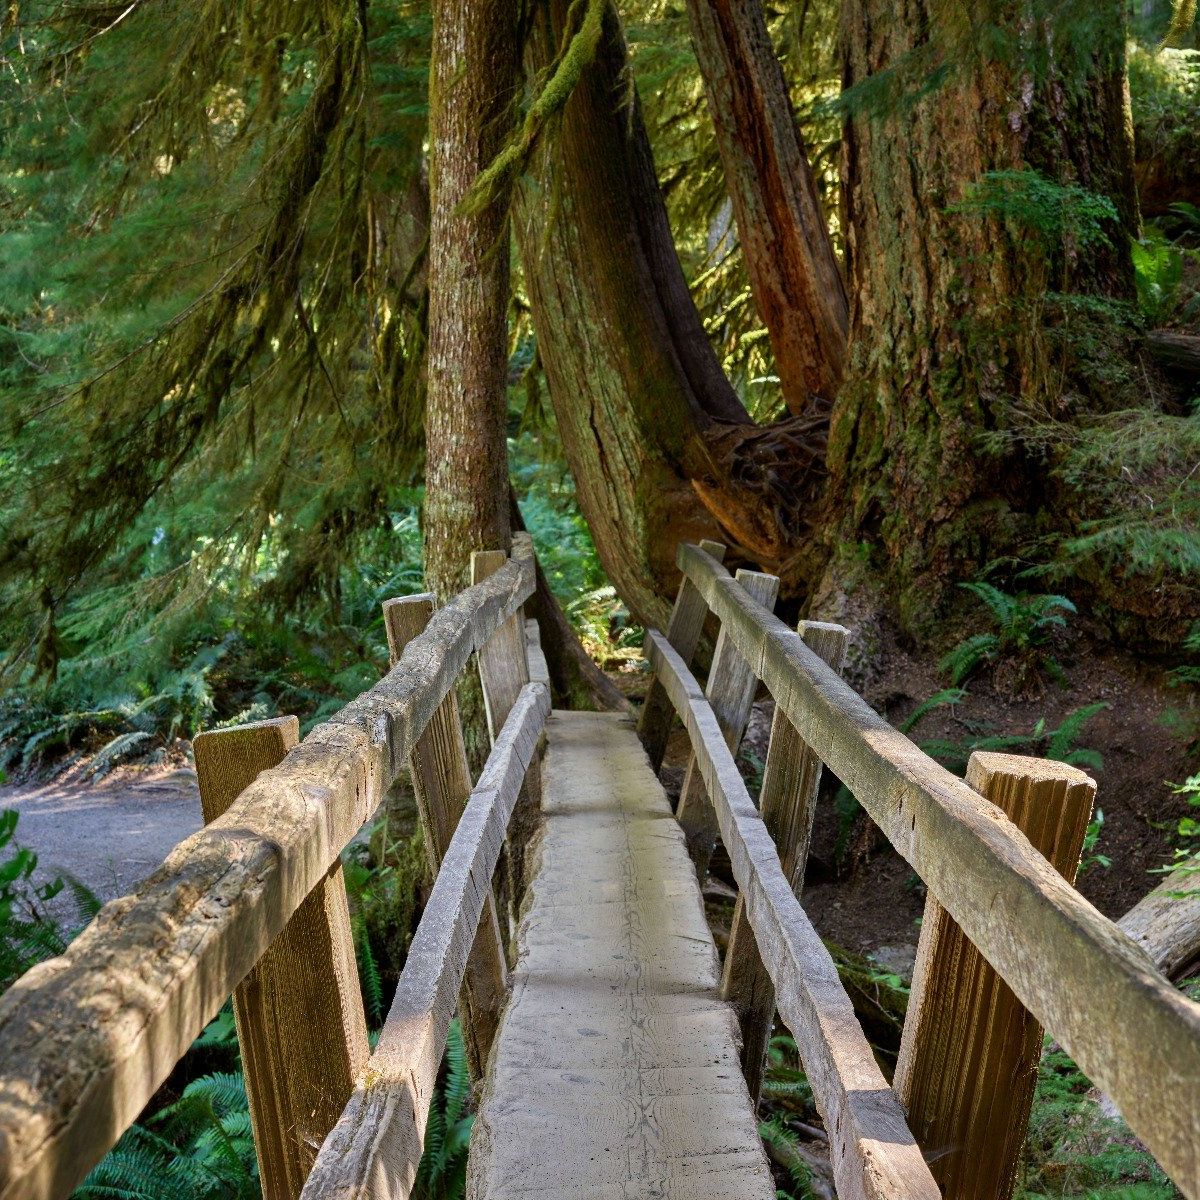 Wooden bridge through the forest